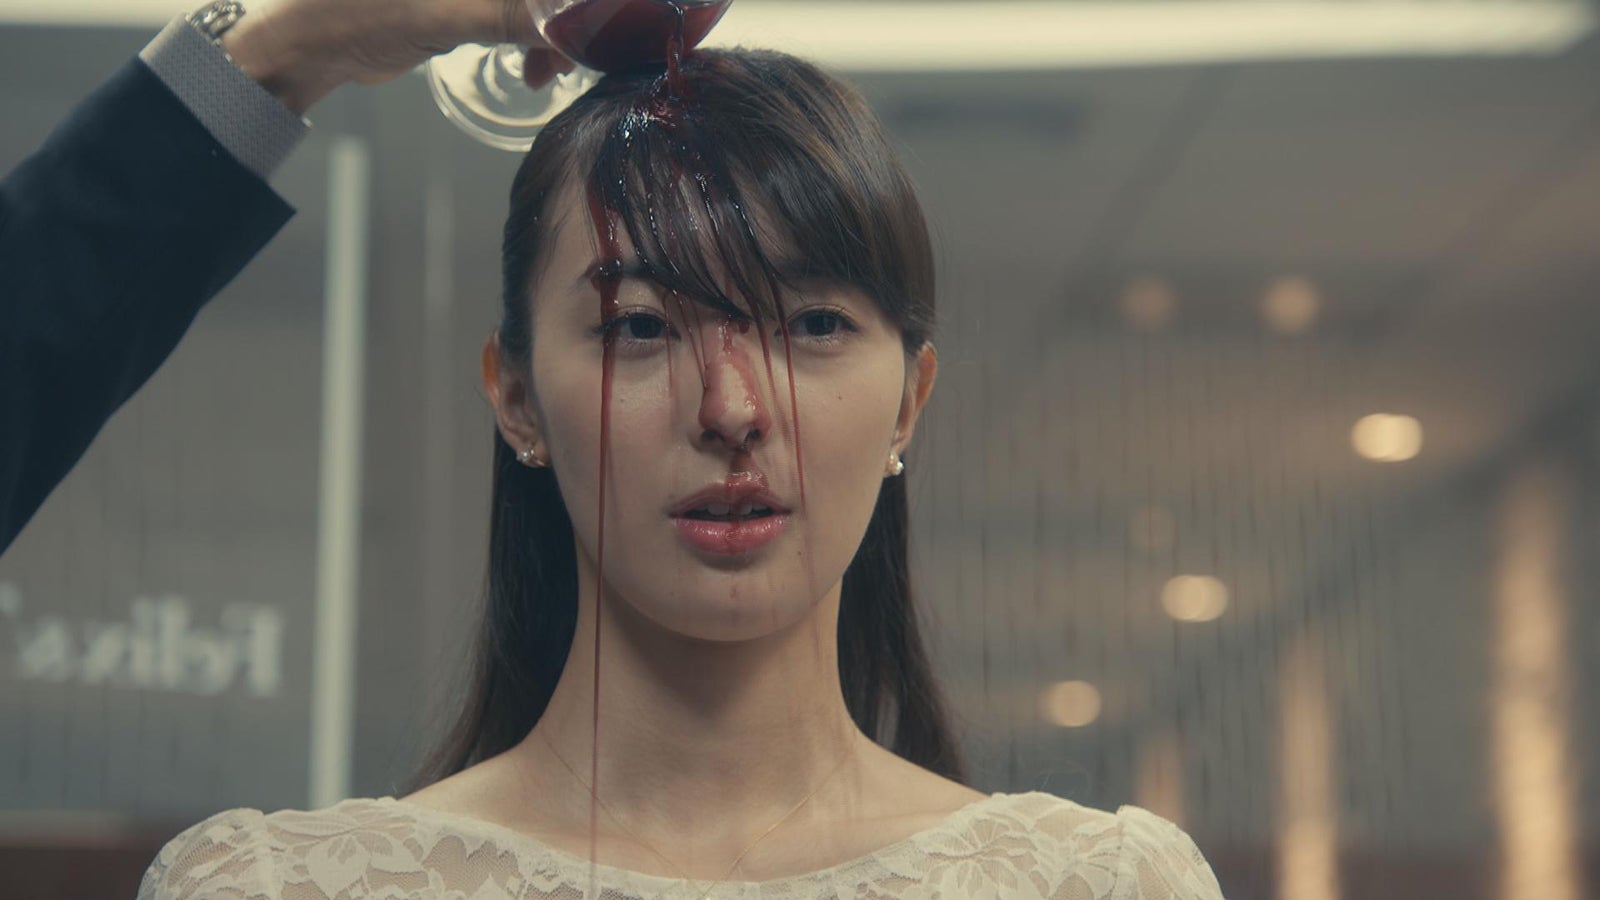 米倉涼子主演 リーガルv で女優デビューの宮本茉由 体当たりの衝撃シーン Ng許されない緊張感 モデルプレス